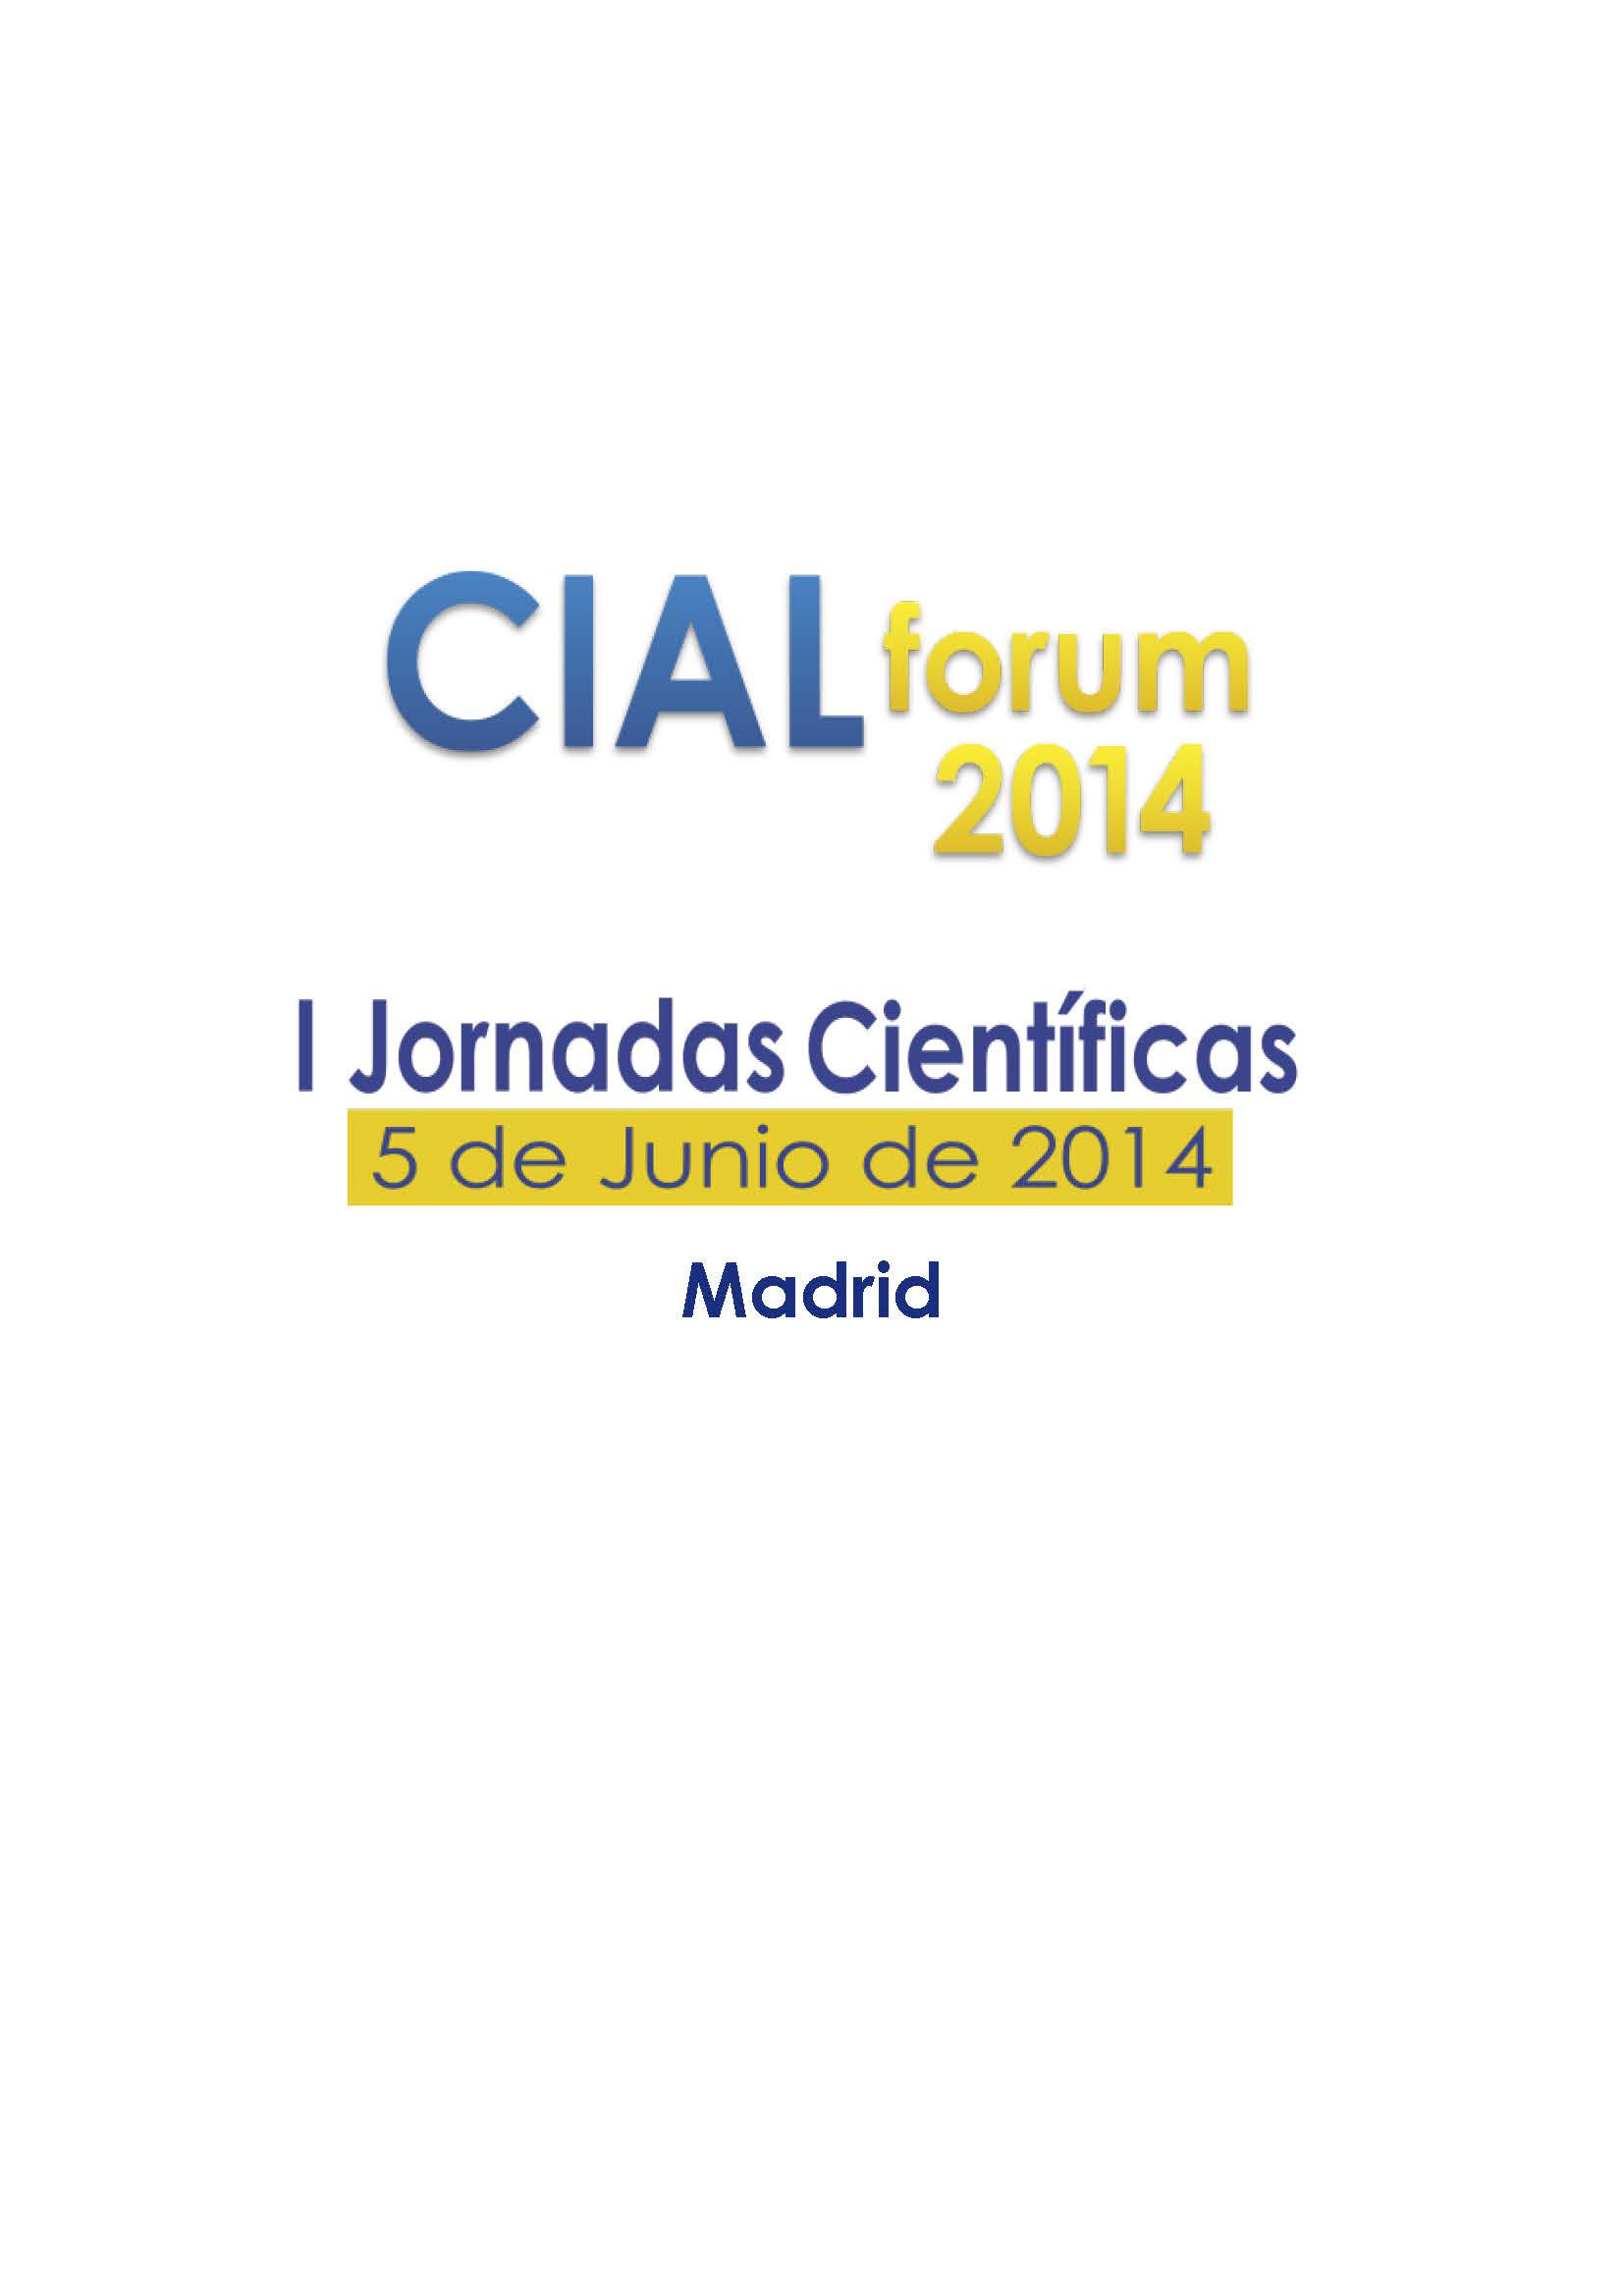 I Jornadas Científicas del CIAL: CIAL forum 2014